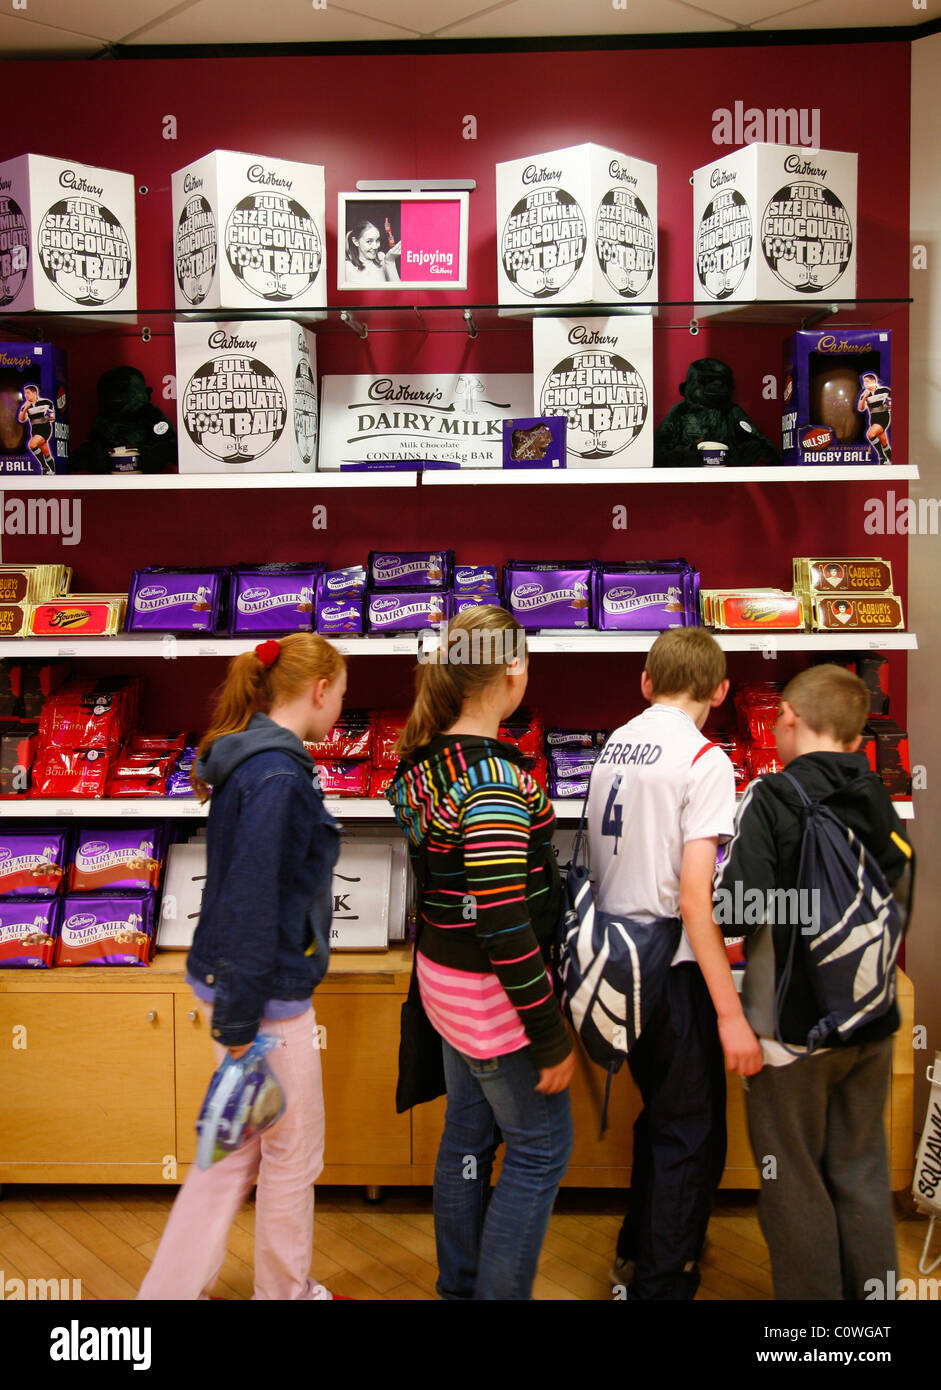 Les enfants à l'usine de chocolat du monde Cudbury, Birmingham, Angleterre, Royaume-Uni. Banque D'Images